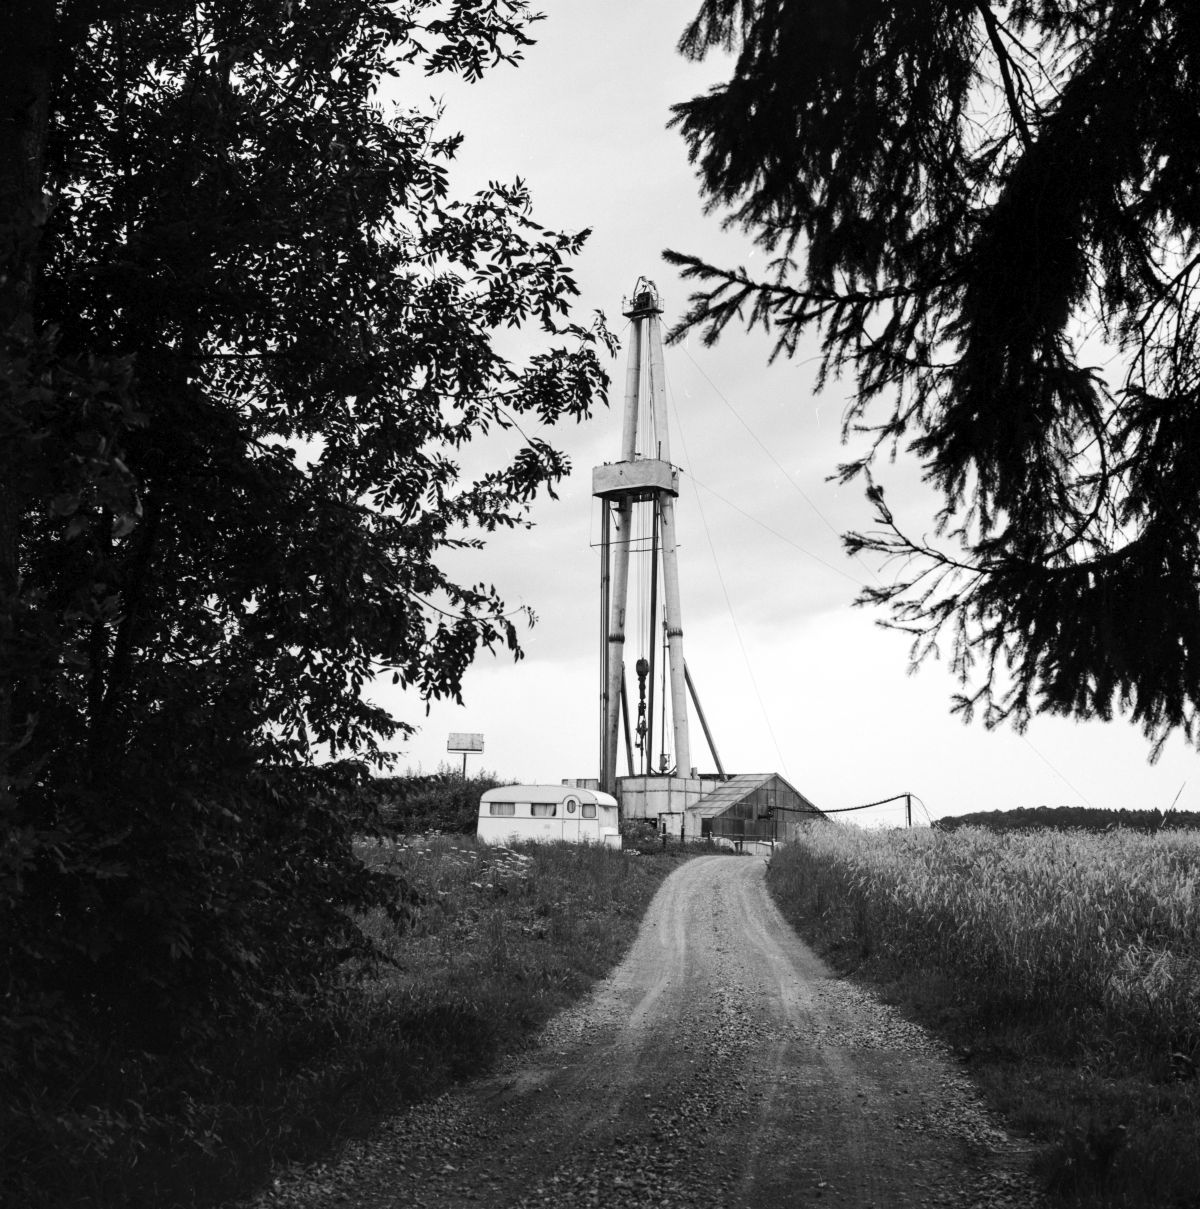 La foreuse de la Société anonyme pour le pétrole suisse SEAG lors des forages pétroliers le 4 août 1965 à Hünenberg 1, canton de Zoug. Photo : KEYSTONE/ Photopress-Archiv